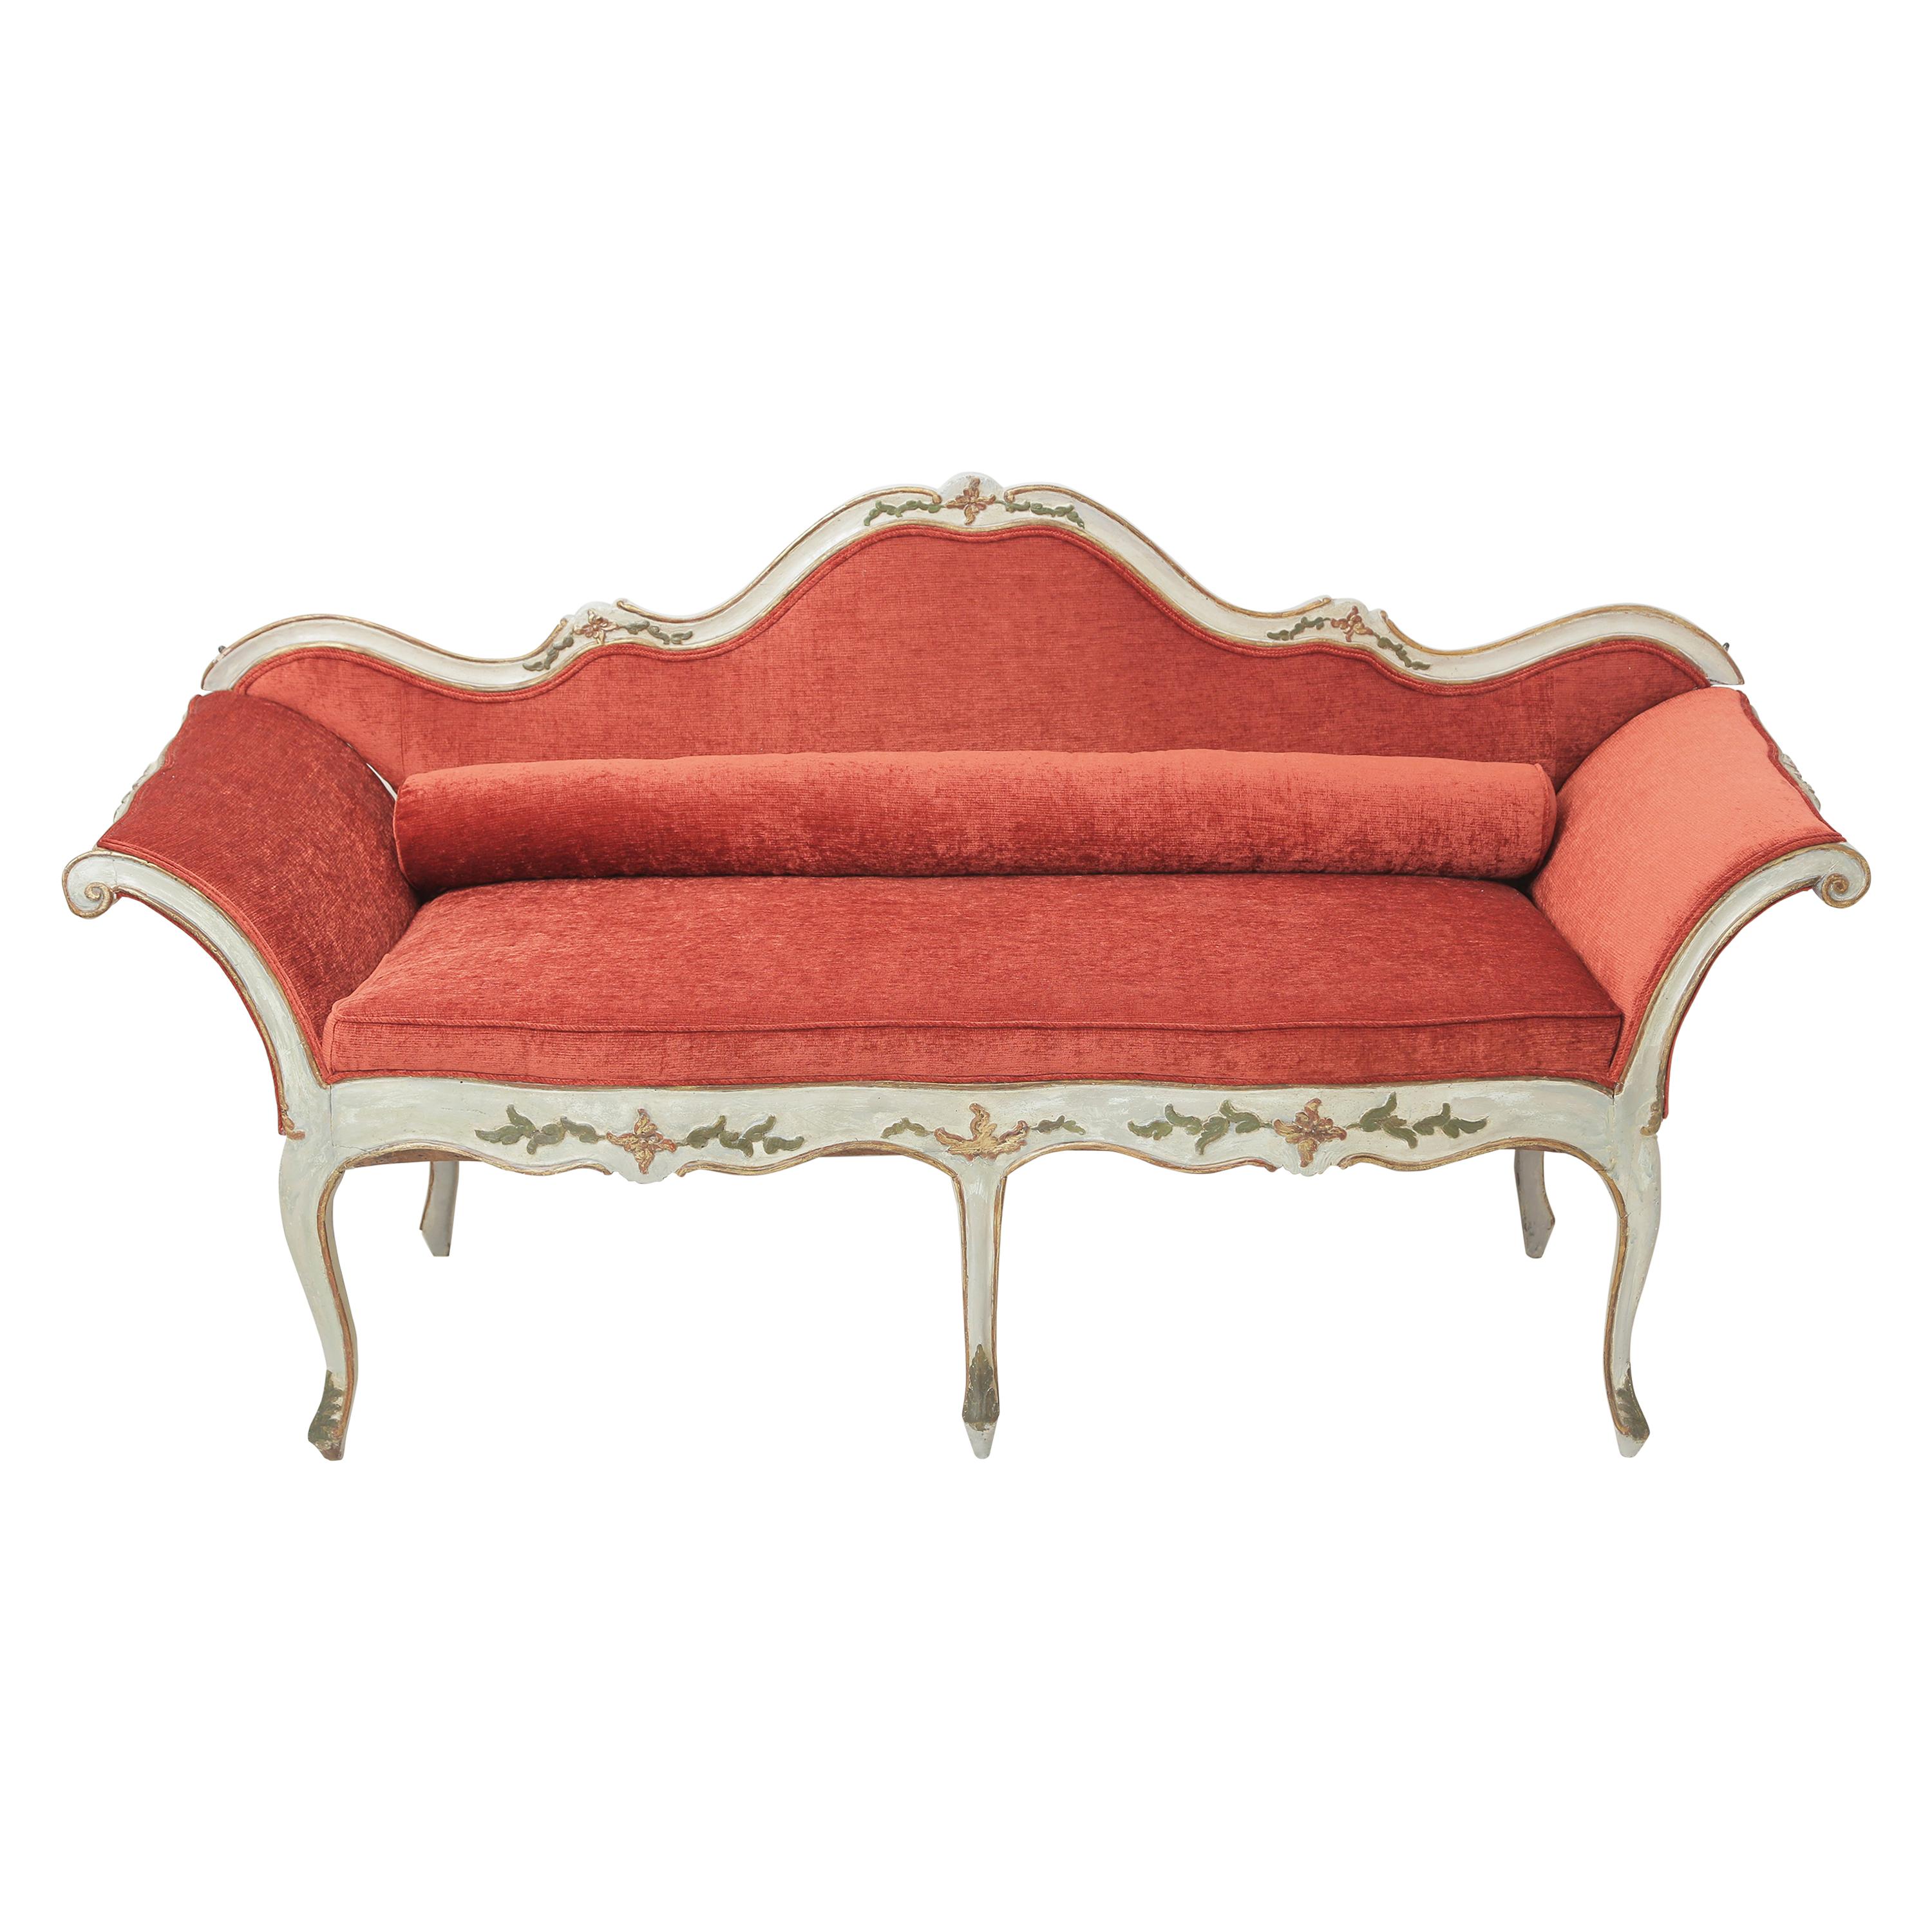 Vergoldetes und graues italienisches Sofa aus dem 19. Jahrhundert, blassorange lackiert  Samt-Polsterung